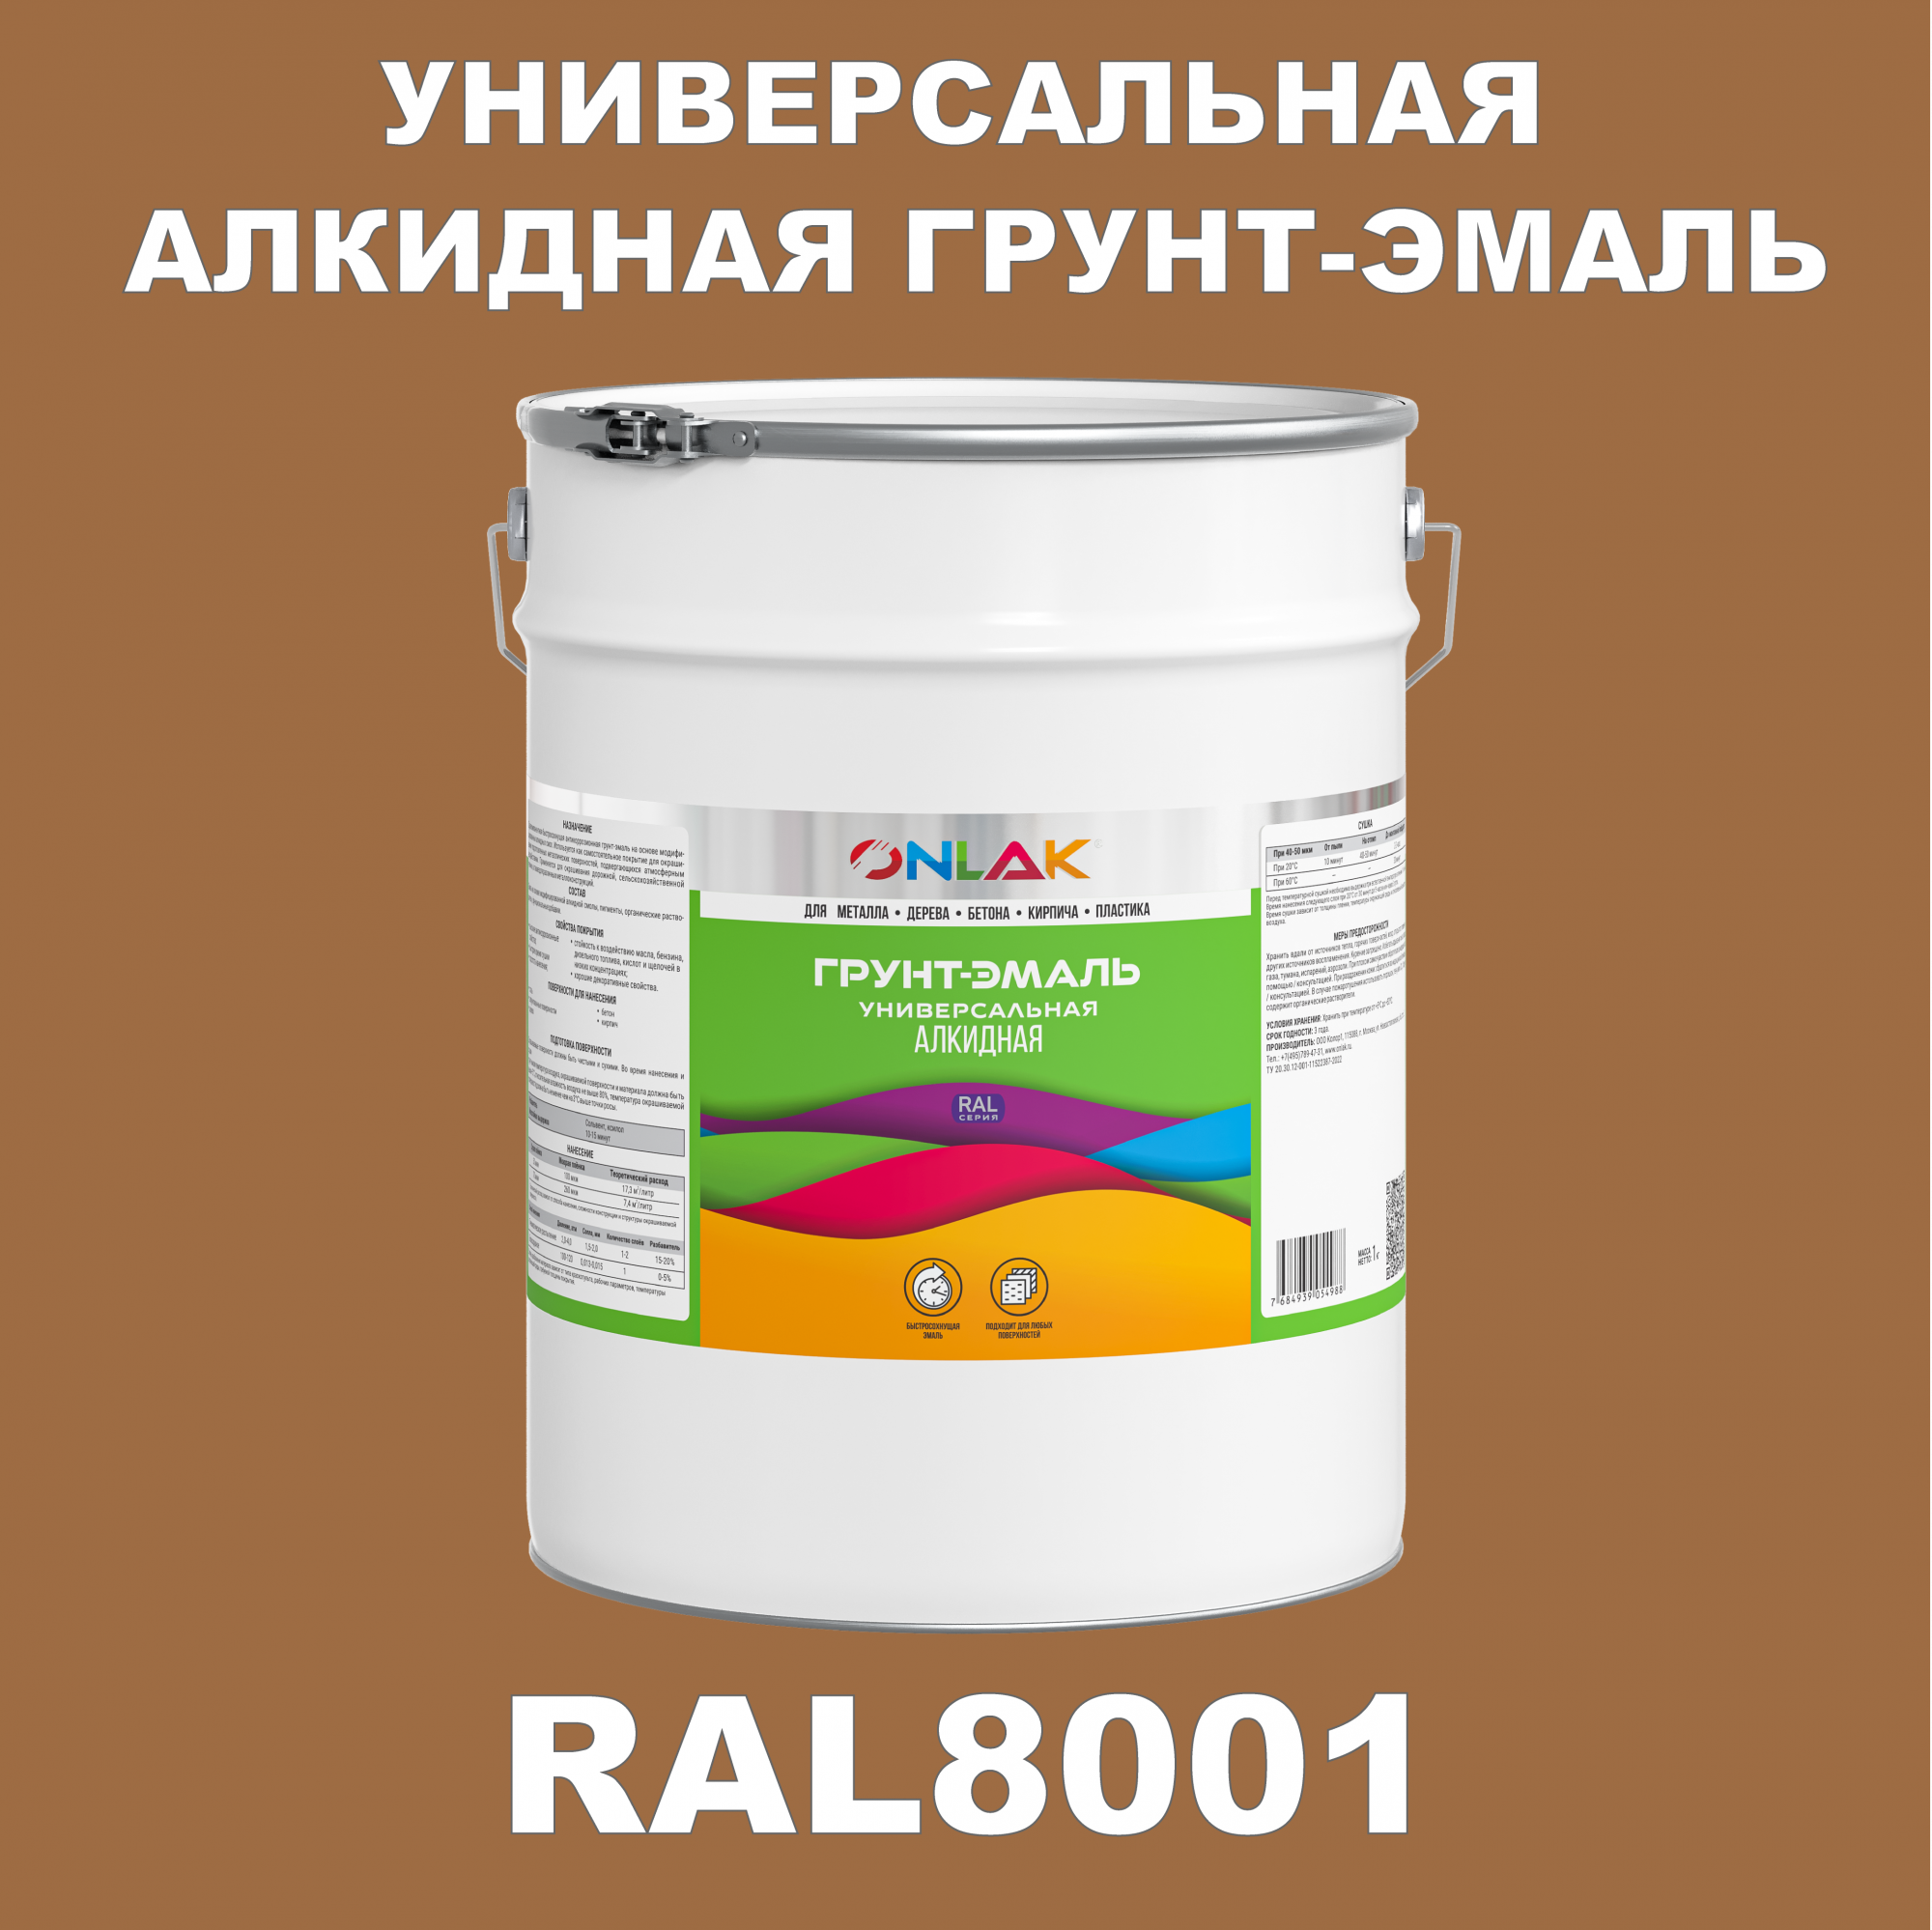 Грунт-эмаль ONLAK 1К RAL8001 антикоррозионная алкидная по металлу по ржавчине 20 кг грунт эмаль yollo по ржавчине алкидная серая 0 9 кг